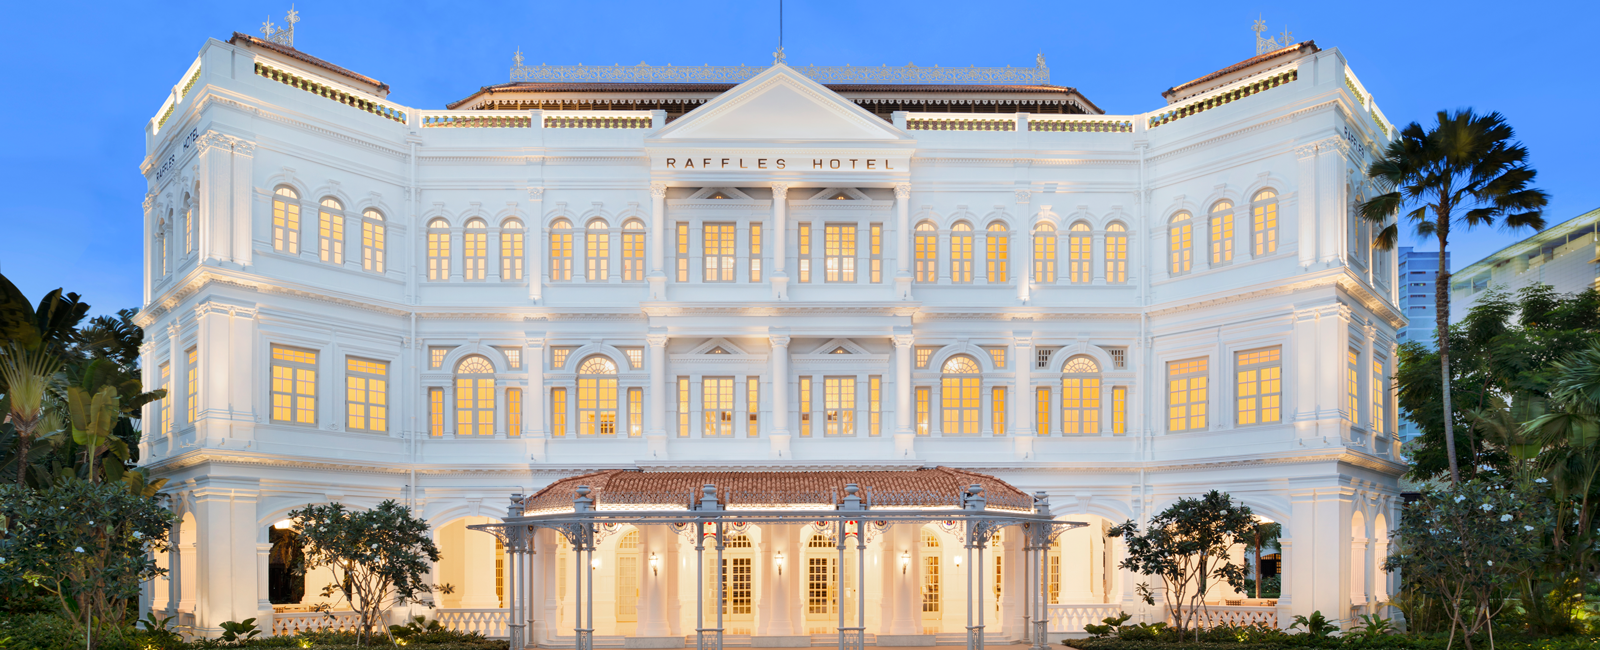 HOTEL NEWS
 Raffles Singapur: eine Hotellegende kehrt zurück 
